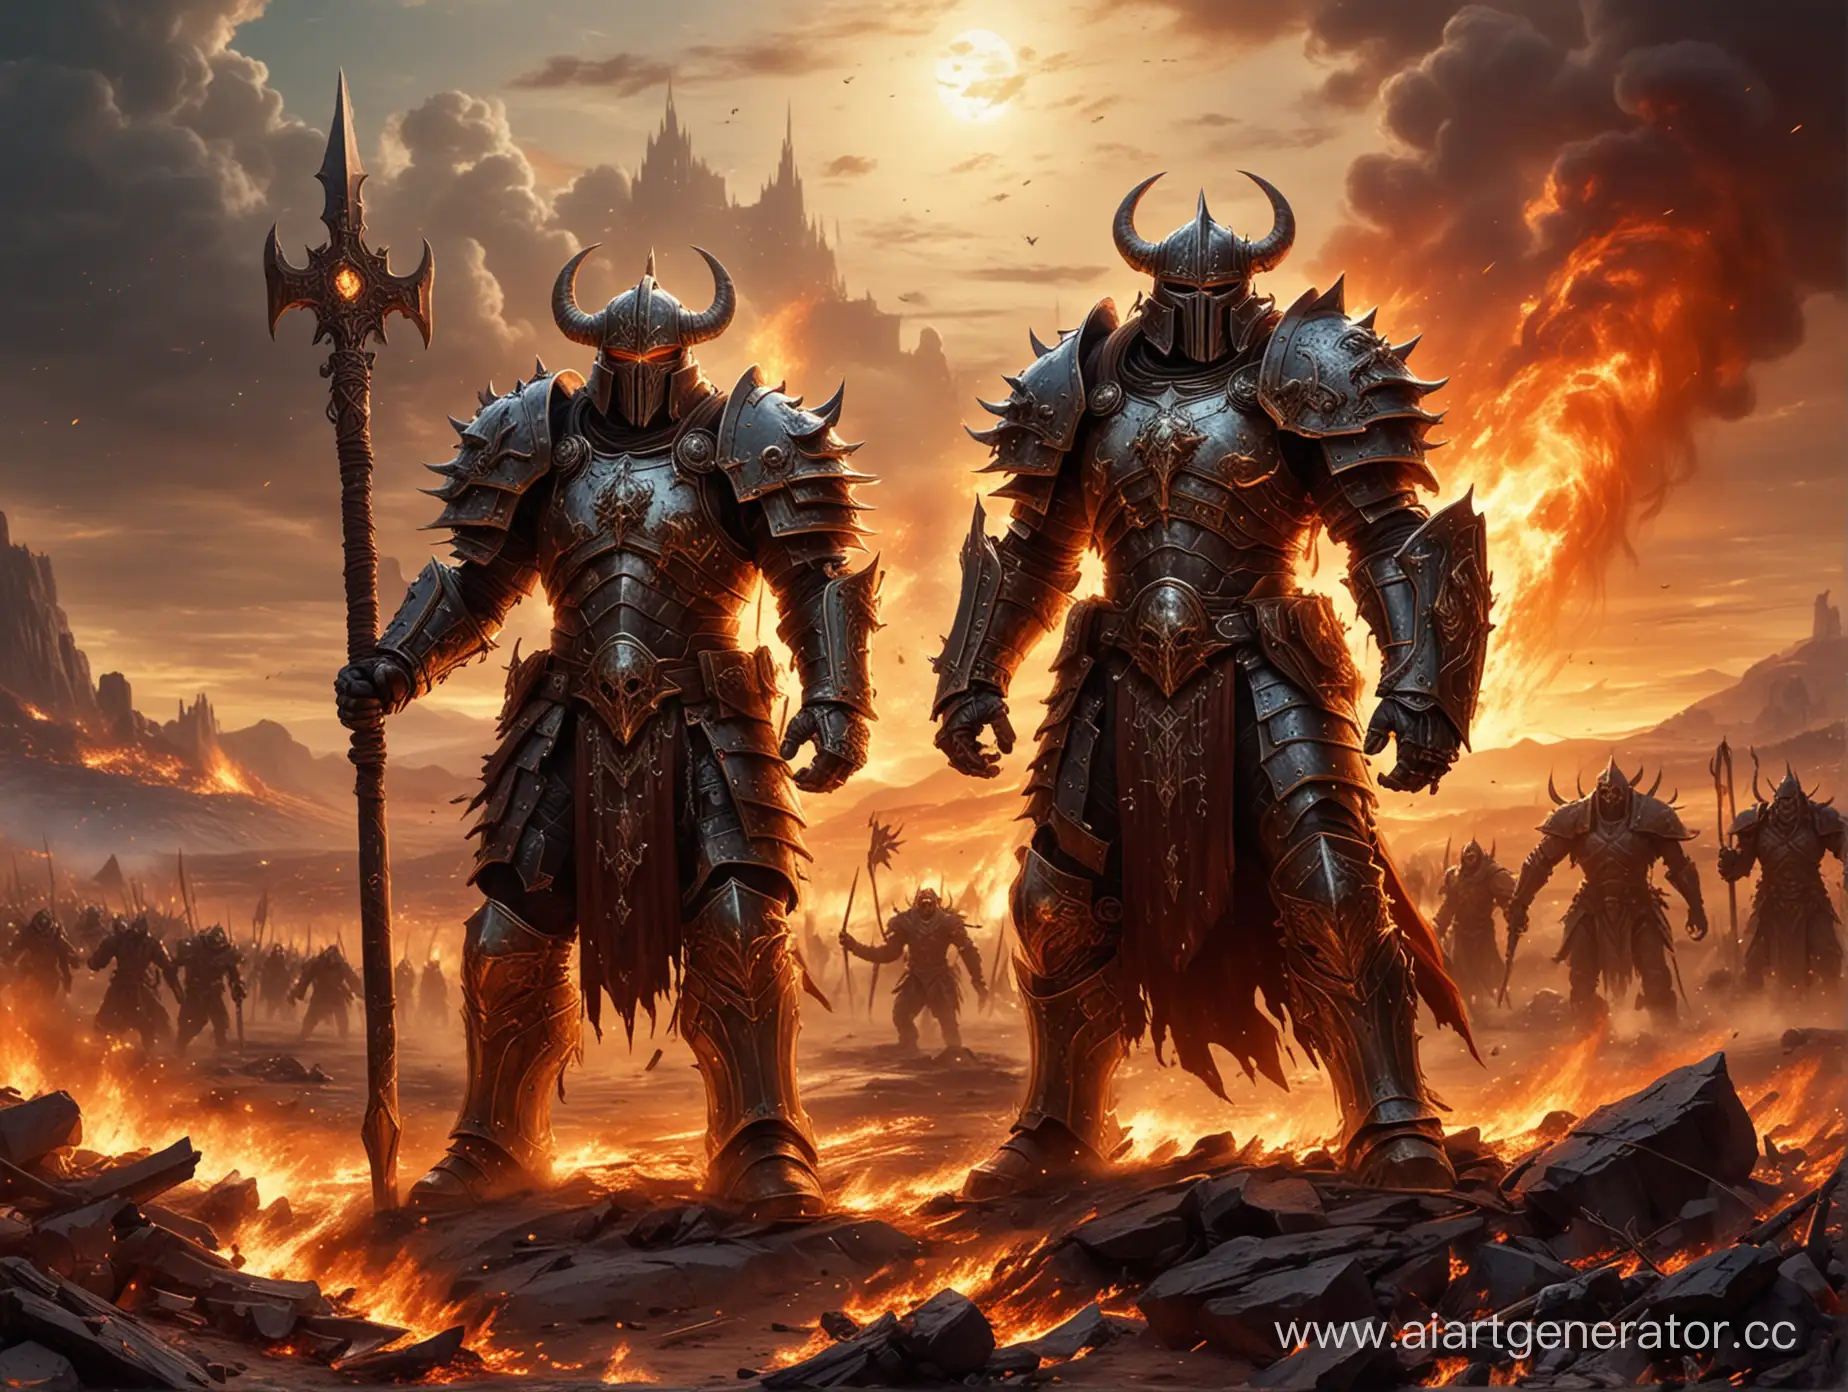 Chaos Warrior (Warhammer Fantasy Battle) art . in massive shiny armor with the sign of chaos. На поле боя под Альдорфом.
Поле Боя пылает в магическом огне.
В небе  Бог Хаоса Неделимого.